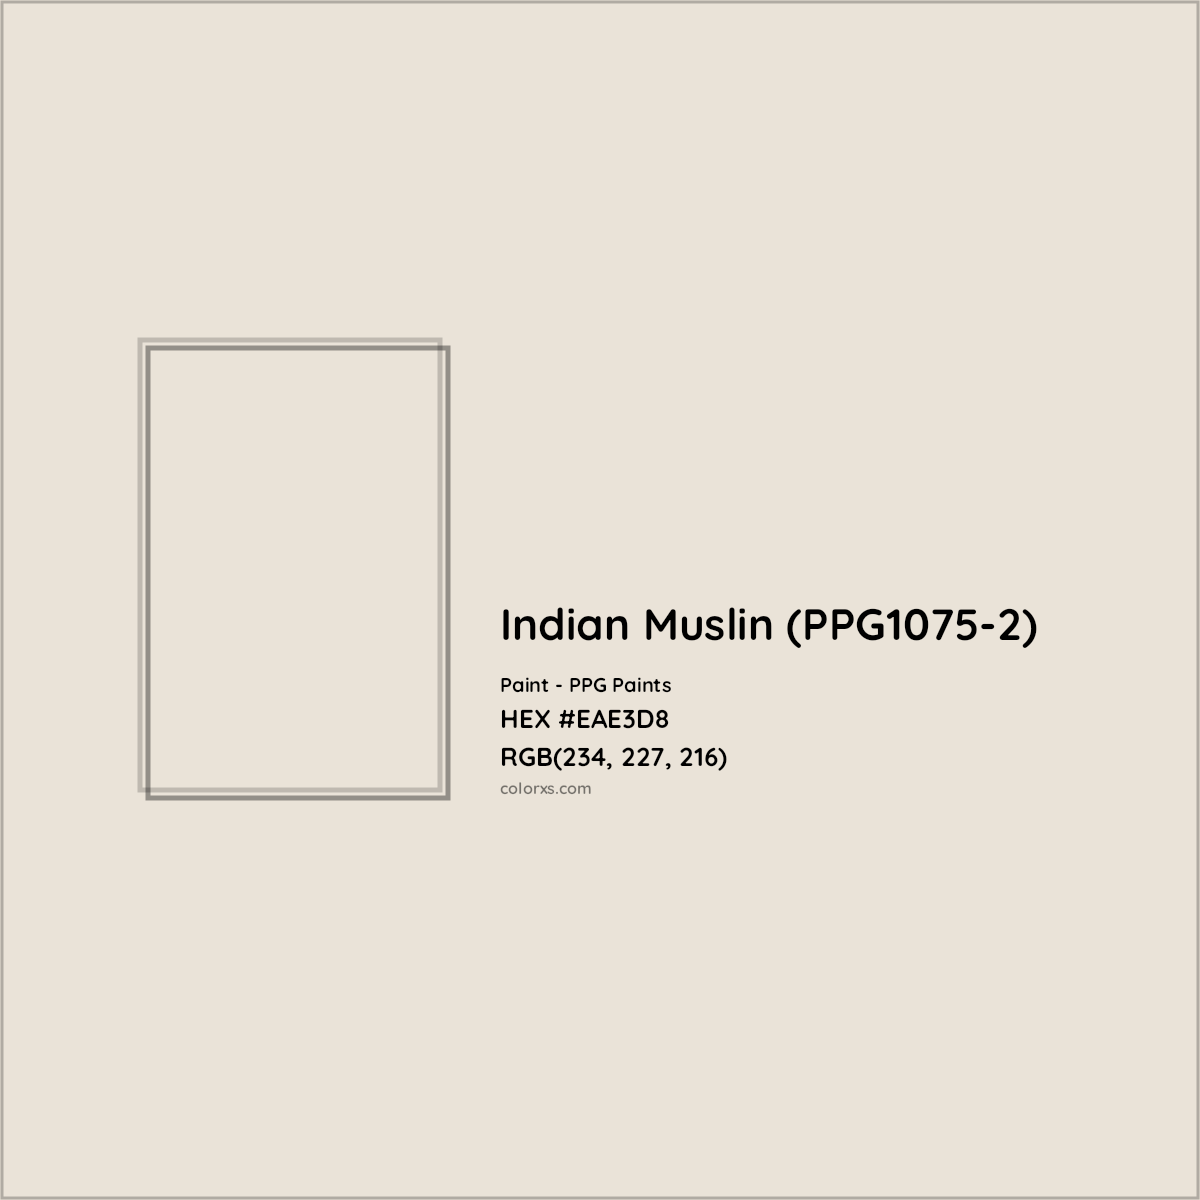 HEX #EAE3D8 Indian Muslin (PPG1075-2) Paint PPG Paints - Color Code